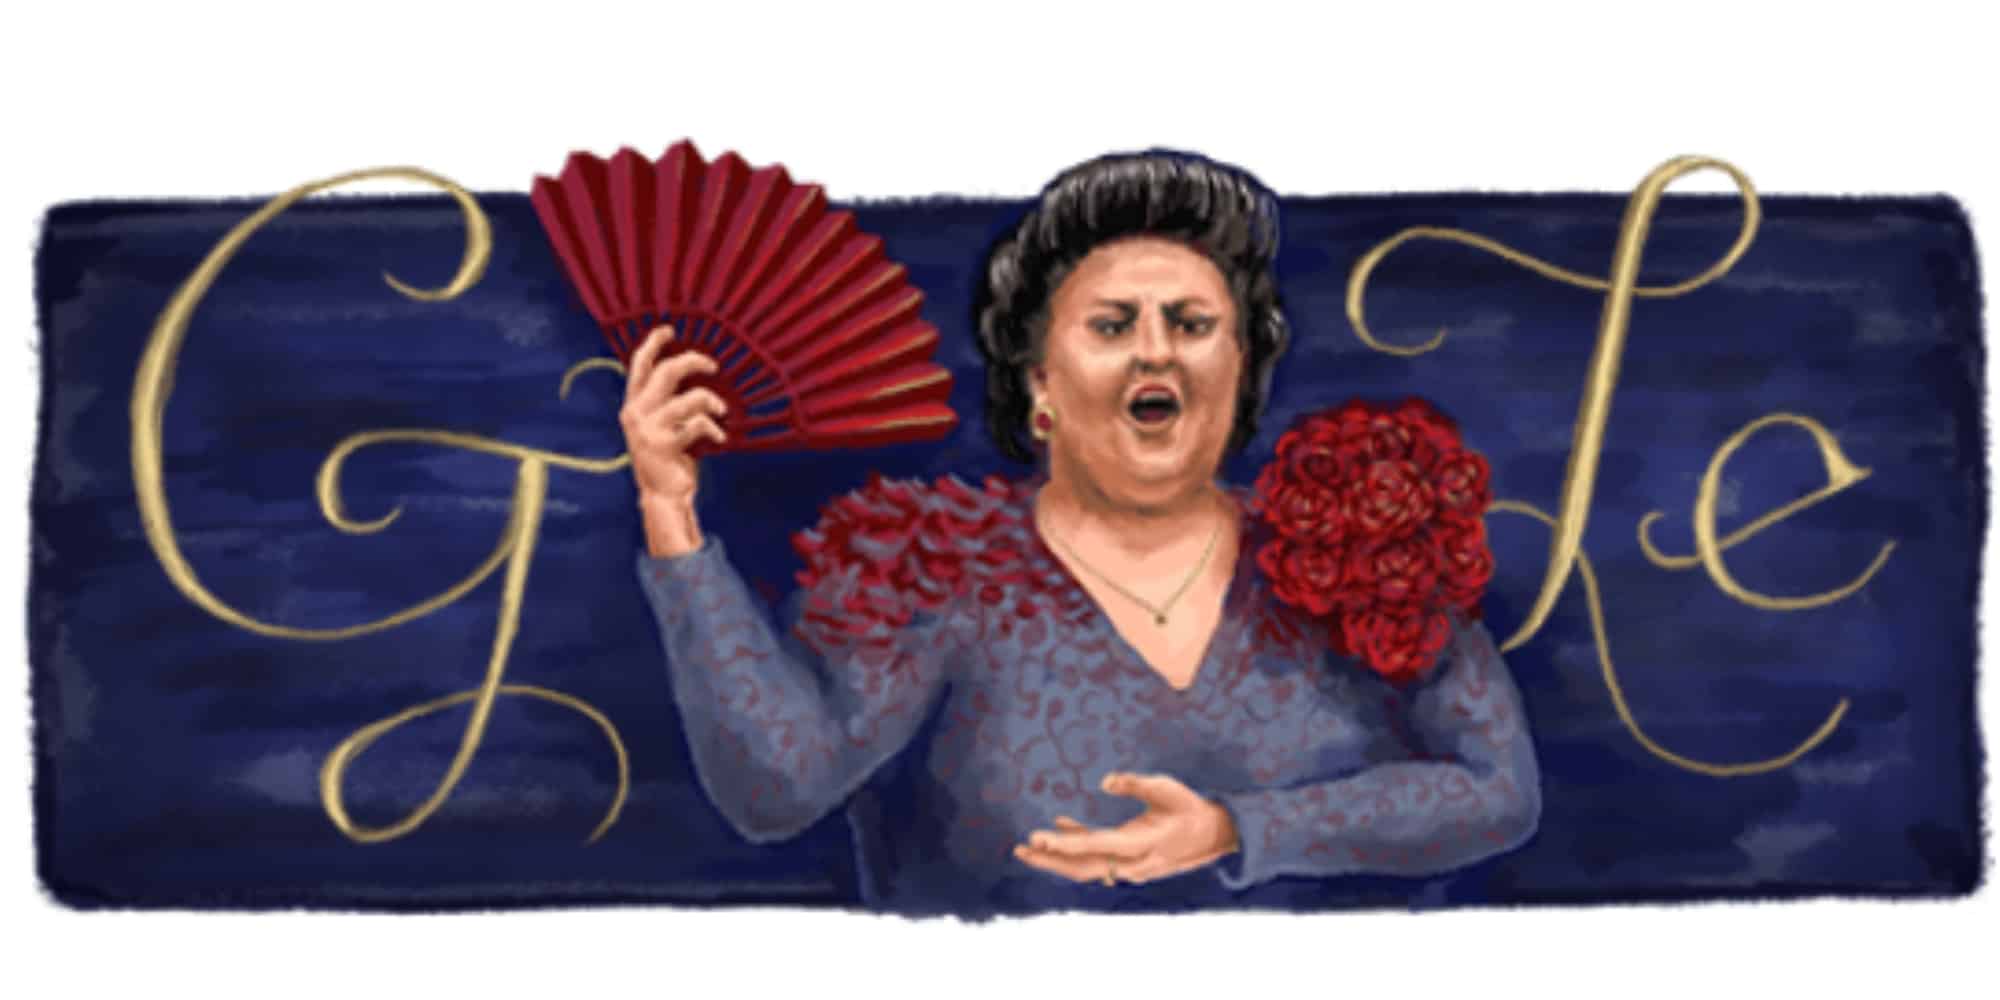 καμπαγιε - Η Google τιμά με doodle την αξέχαστη ντίβα της όπερας, Μονσεράτ Καμπαγιέ